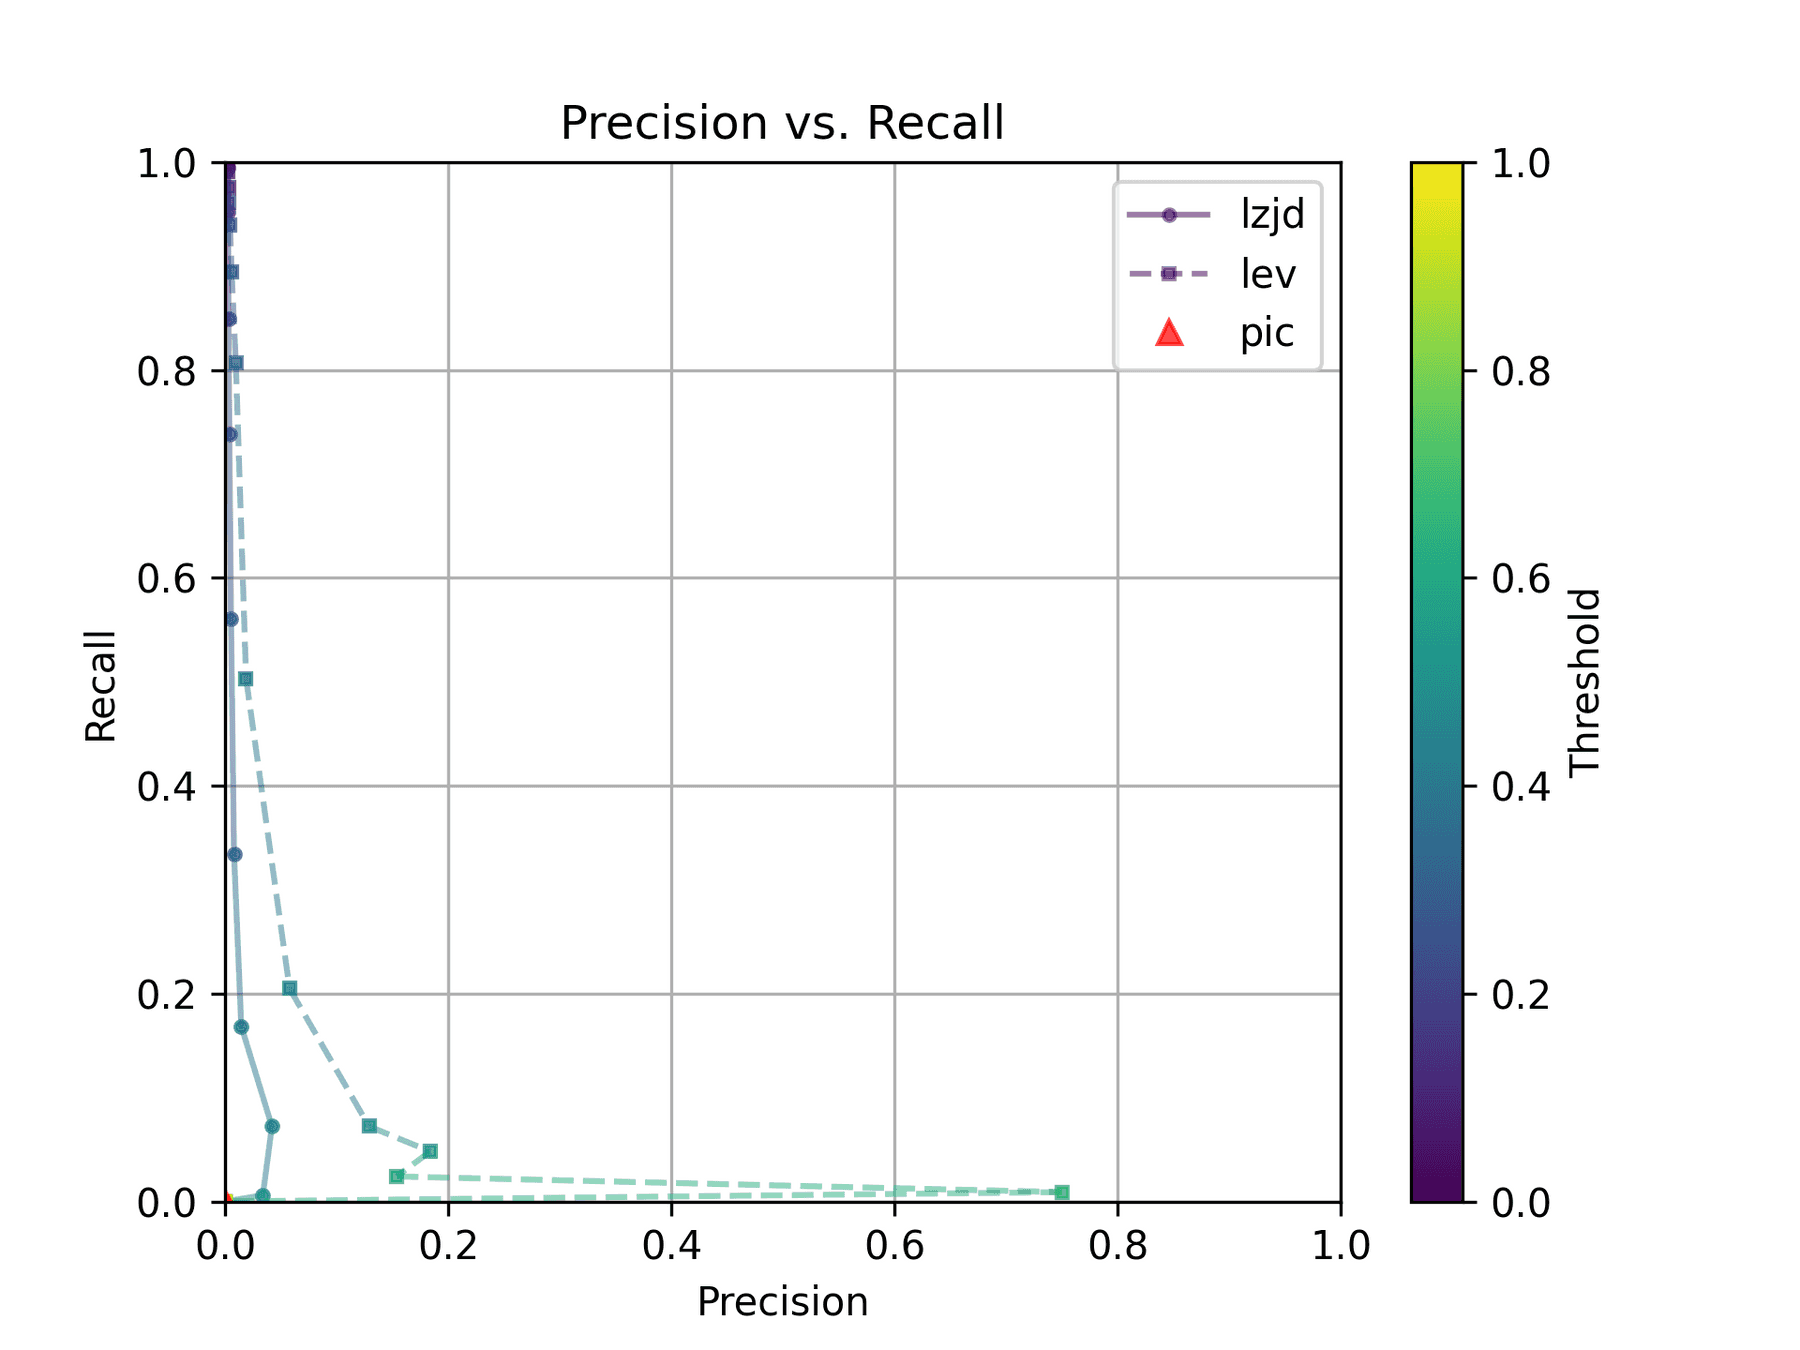 Precision vs. Recall plot for "openssl -O0 vs -O3"